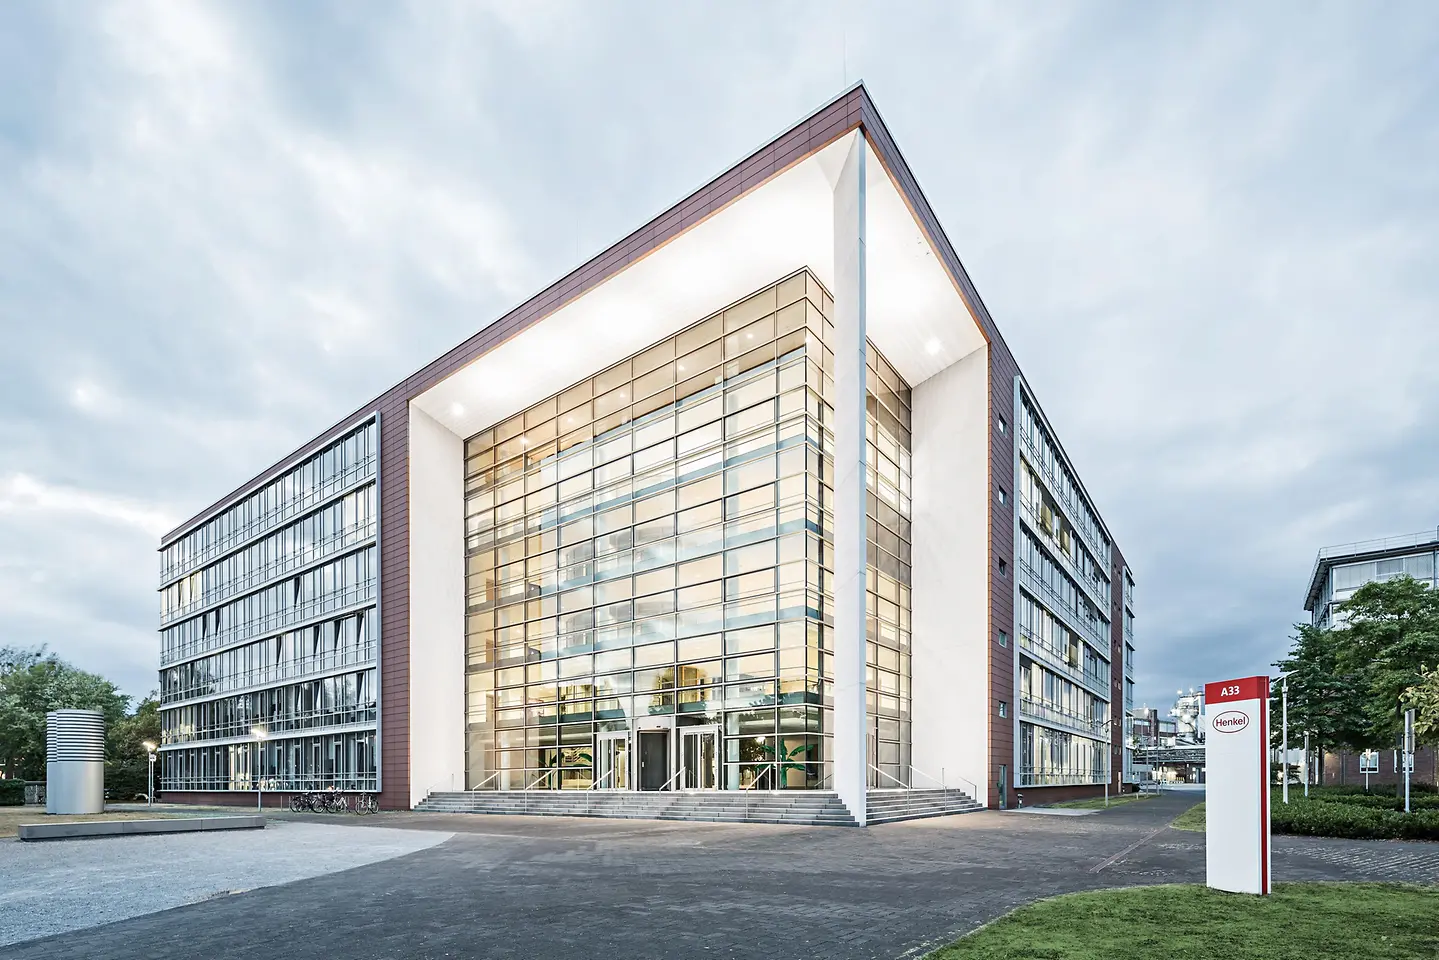 Aerial view of Henkel's headquarters in Düsseldorf